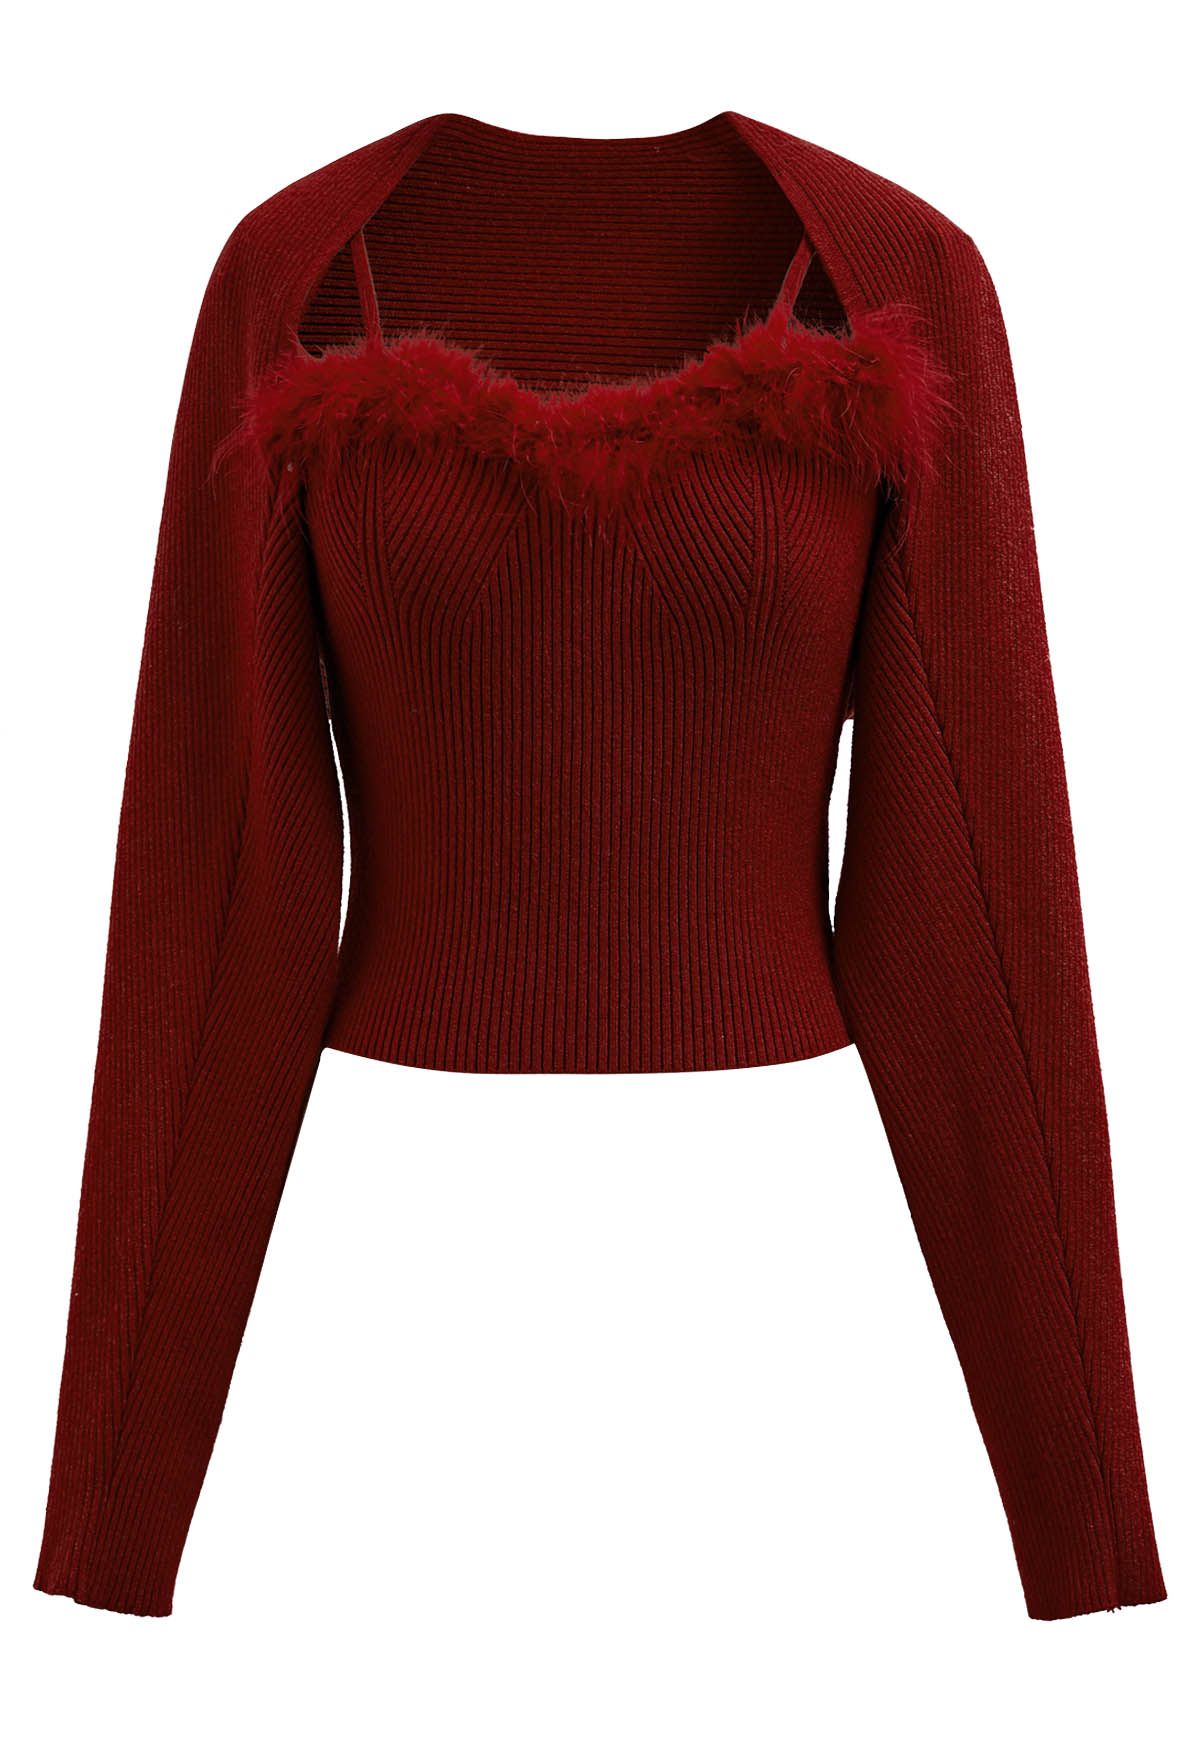 Conjunto de top camisola con ribete de plumas y manga de suéter en color burdeos